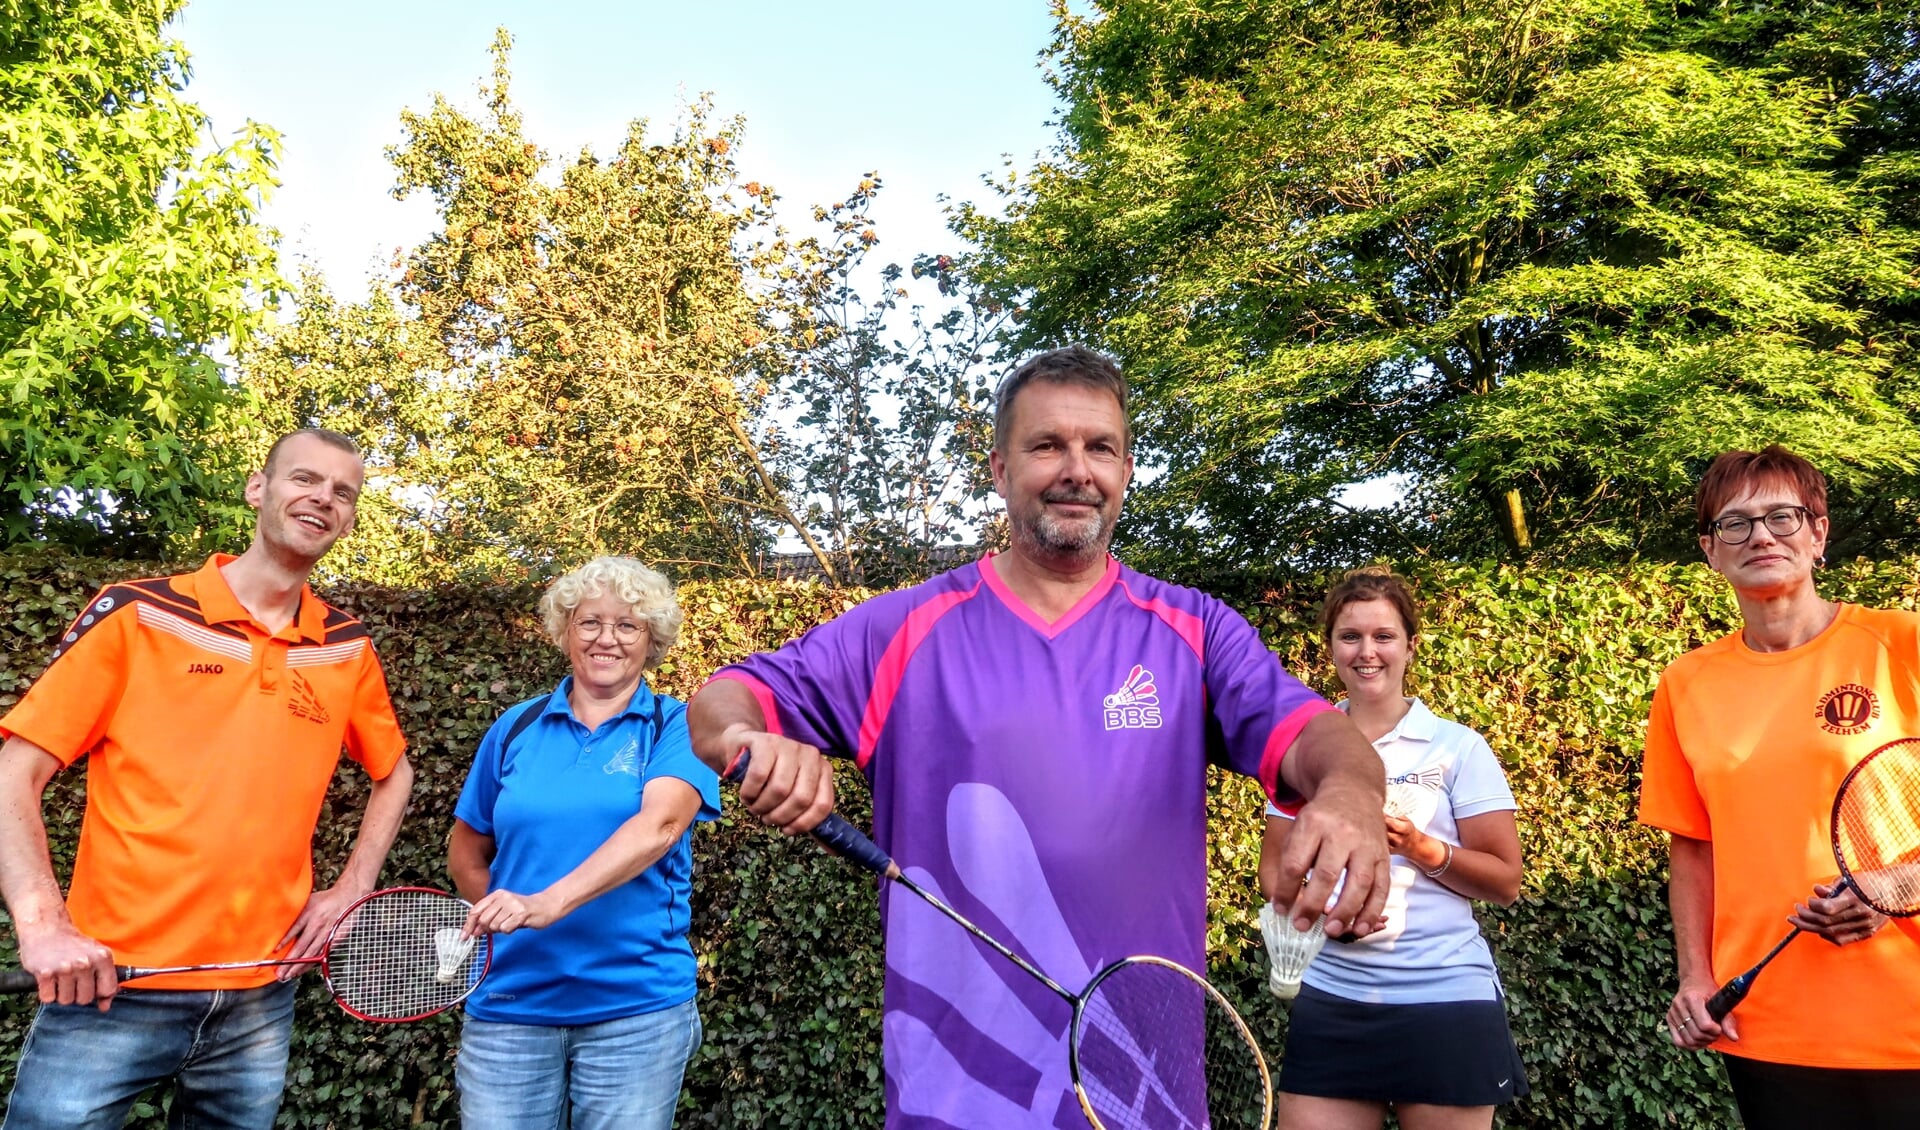 Hans Zweverink (midden) toont het shirt van de nieuwe badmintonvereniging Bronckhorst Badmintont Samen (BBS). Hij wordt geflankeerd door v.l.n.r. Peter Annevelink (Flash Vorden), Sylvia Breukink (BCS Steenderen), Nienke Onstenk (HBC Hengelo) en Elly Hof (BC Zelhem). Foto: Luuk Stam